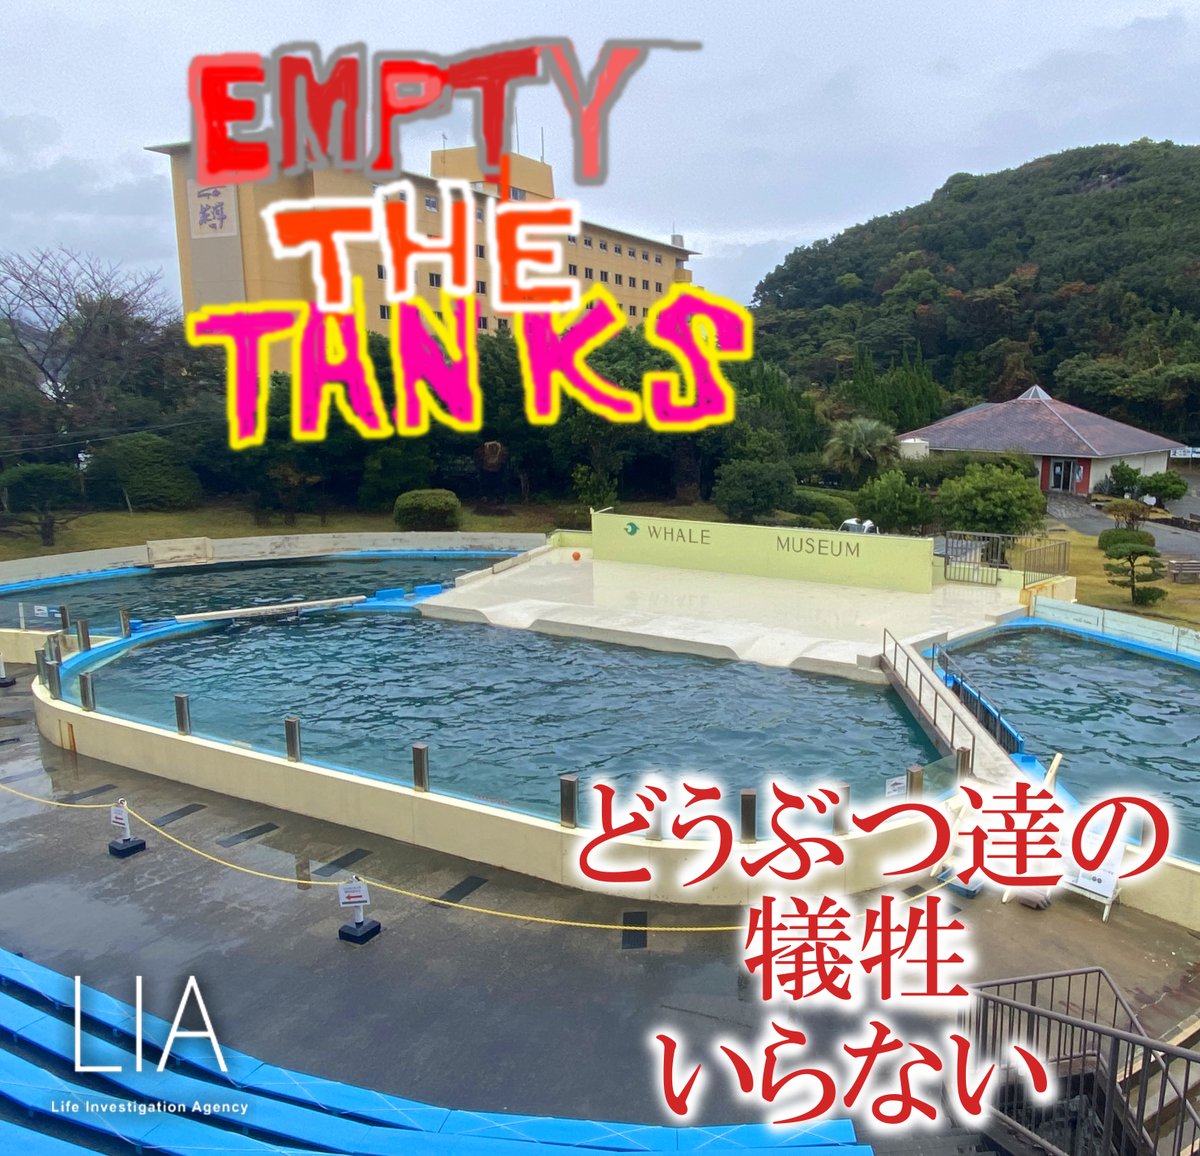 Empty The Tanks！
「水族館を空に!＝Empty The Tanks！」
世界中の全てのどうぶつ園と水族館が1日も早く、閉鎖されますように！
人間の娯楽やひと時の癒しに、どうぶつの犠牲はいらない。
#水族館の入場料を払わないで #イルカショーのチケットを買わないで #DolphinProject #LifeInvestigationAgency